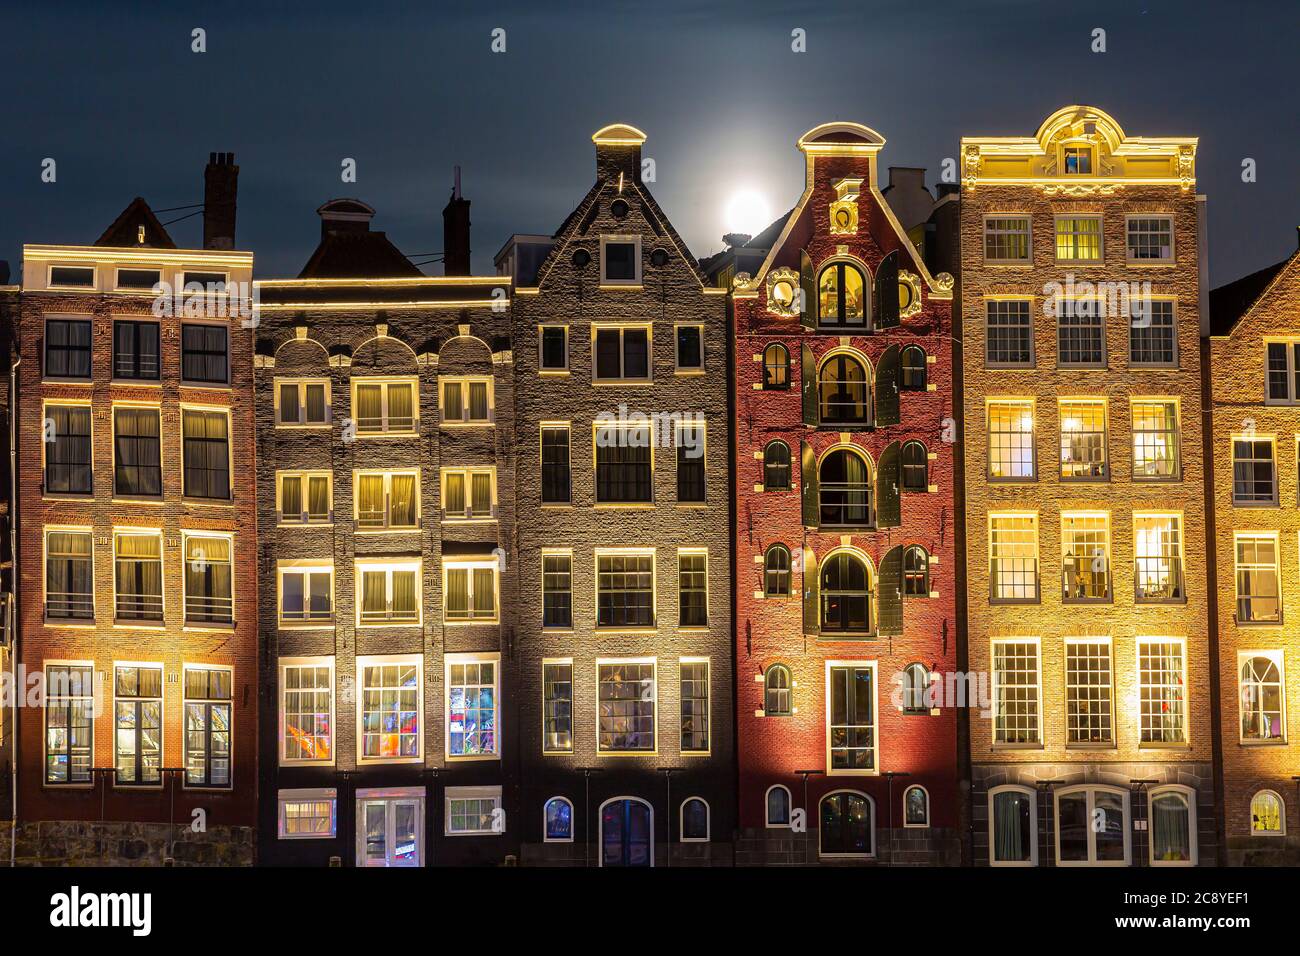 Amsterdam Damrak architettura tradizionale olandese di notte. Tour delle navi da crociera in primo piano. Foto Stock